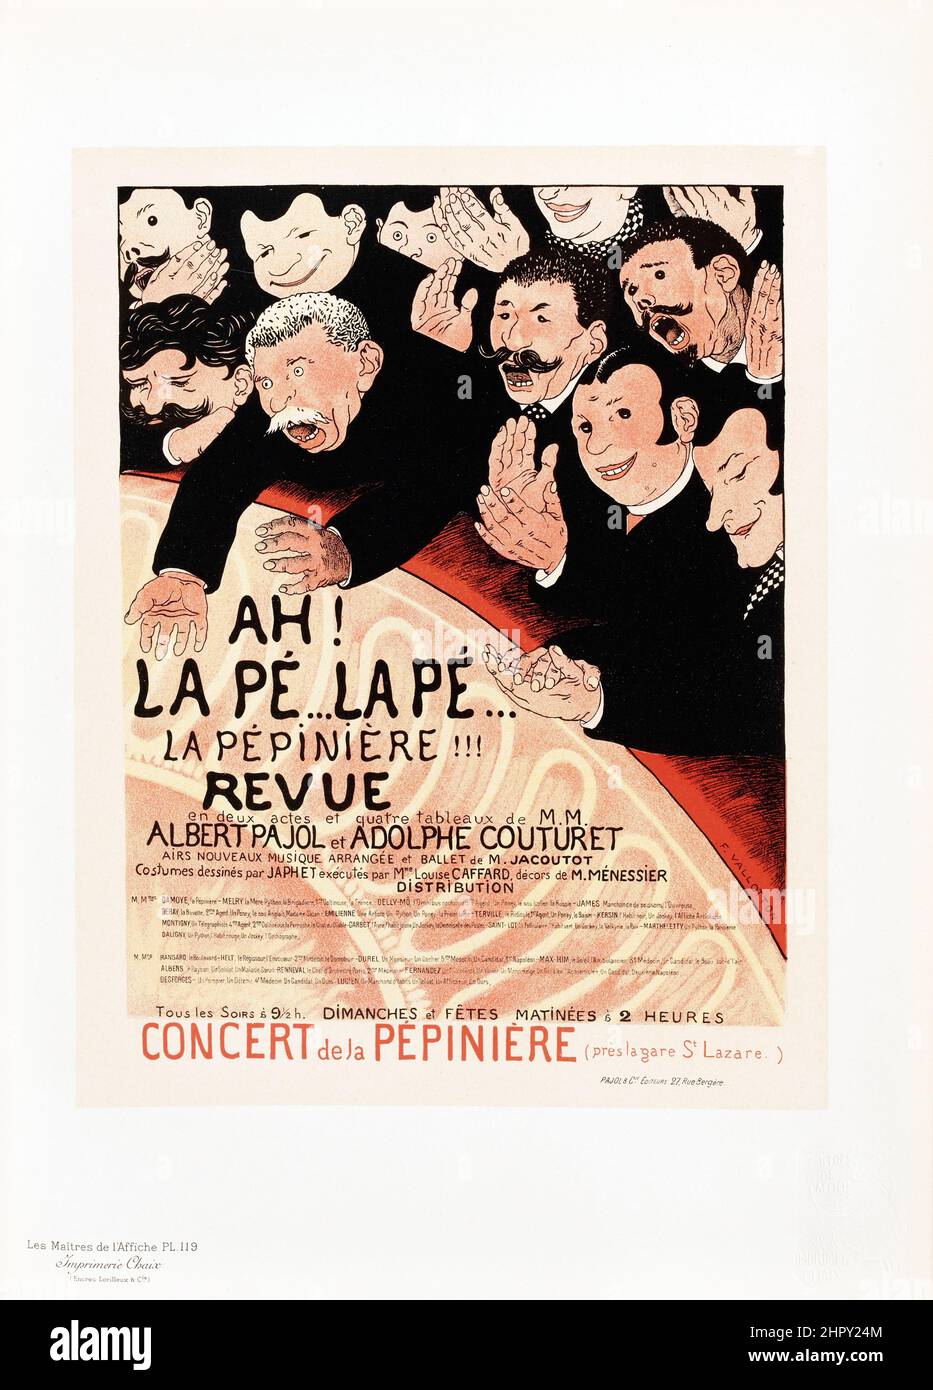 Maitres de l'affiche Vol 3 - Plate 119 - Félix Vallotton 1895. La Pepiniere, Revue. Theatre / concert poster. Stock Photo